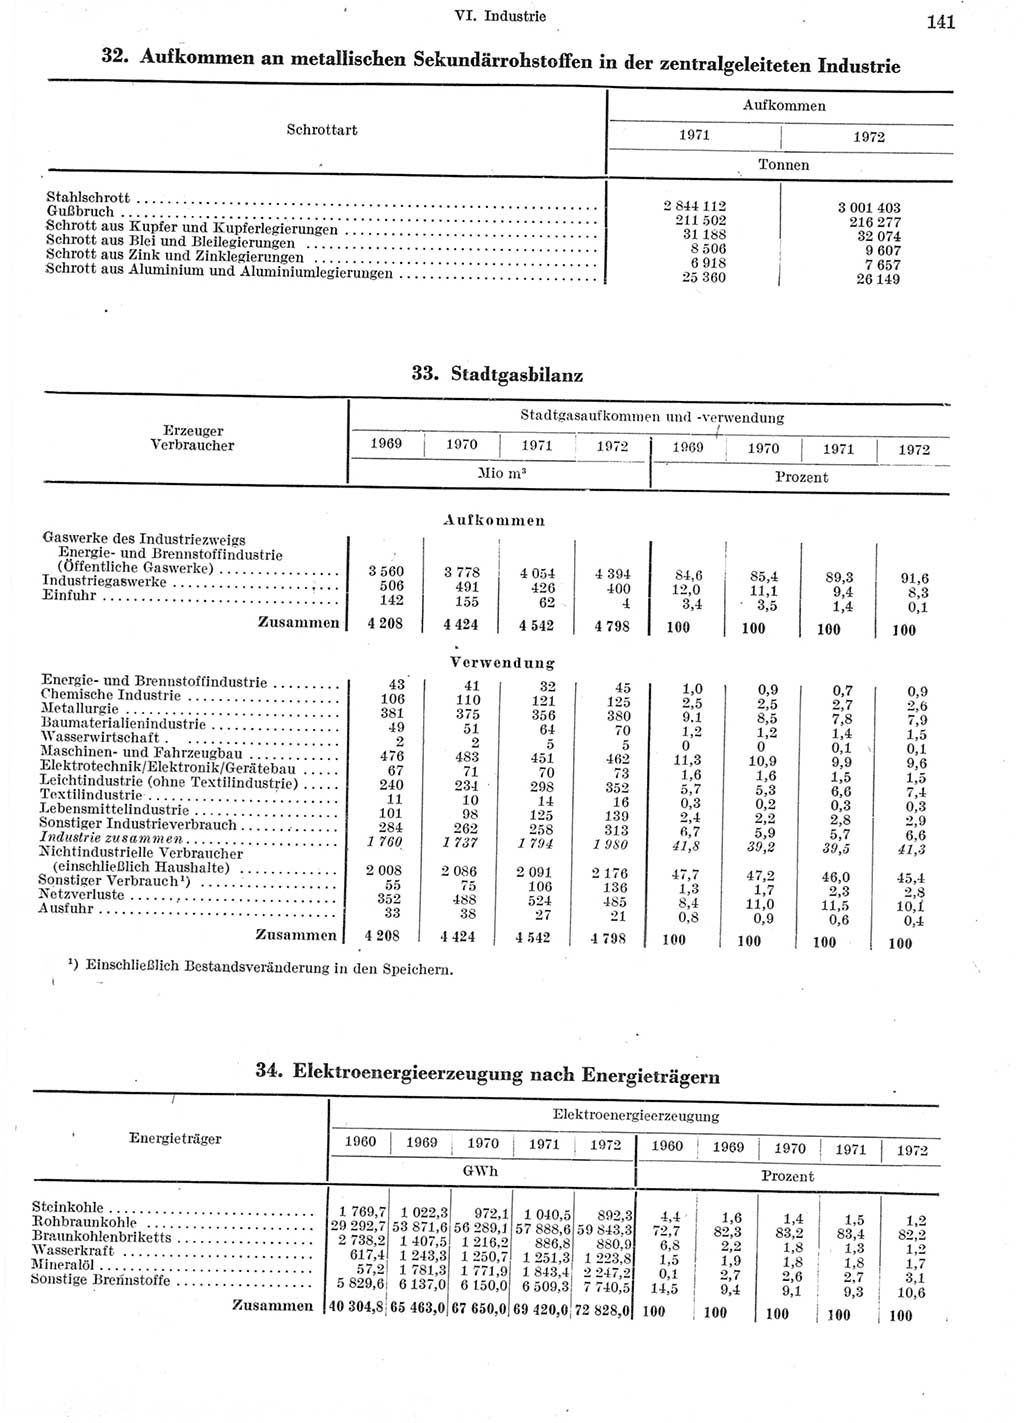 Statistisches Jahrbuch der Deutschen Demokratischen Republik (DDR) 1973, Seite 141 (Stat. Jb. DDR 1973, S. 141)